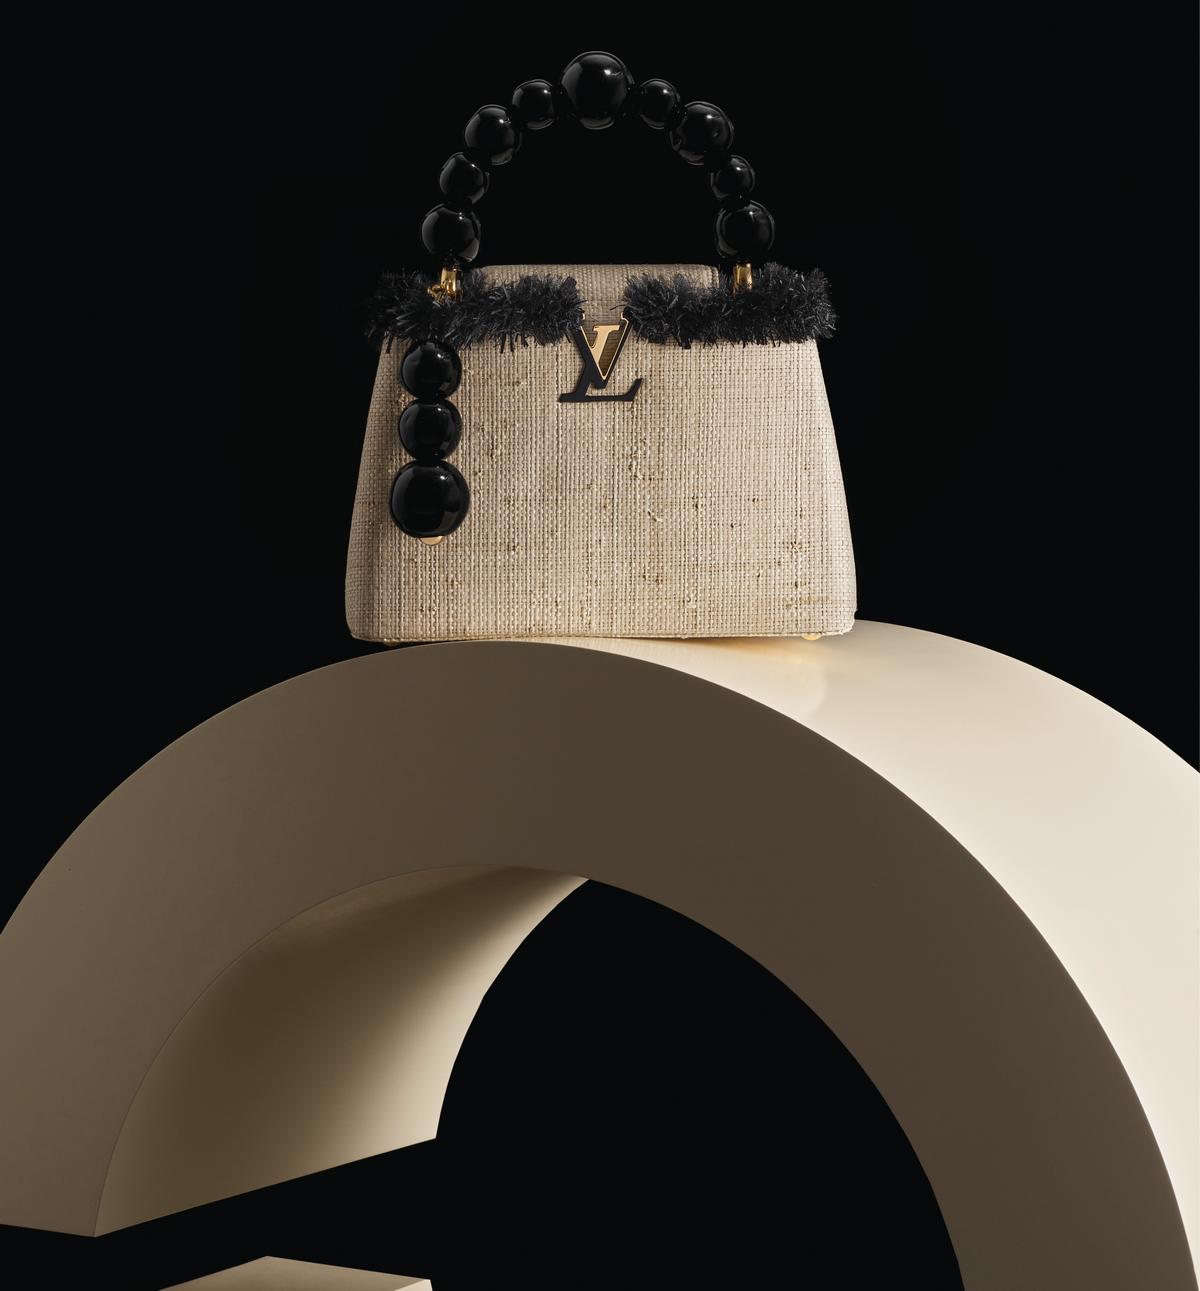 5 artists revisit Louis Vuitton's famous Capucine bag